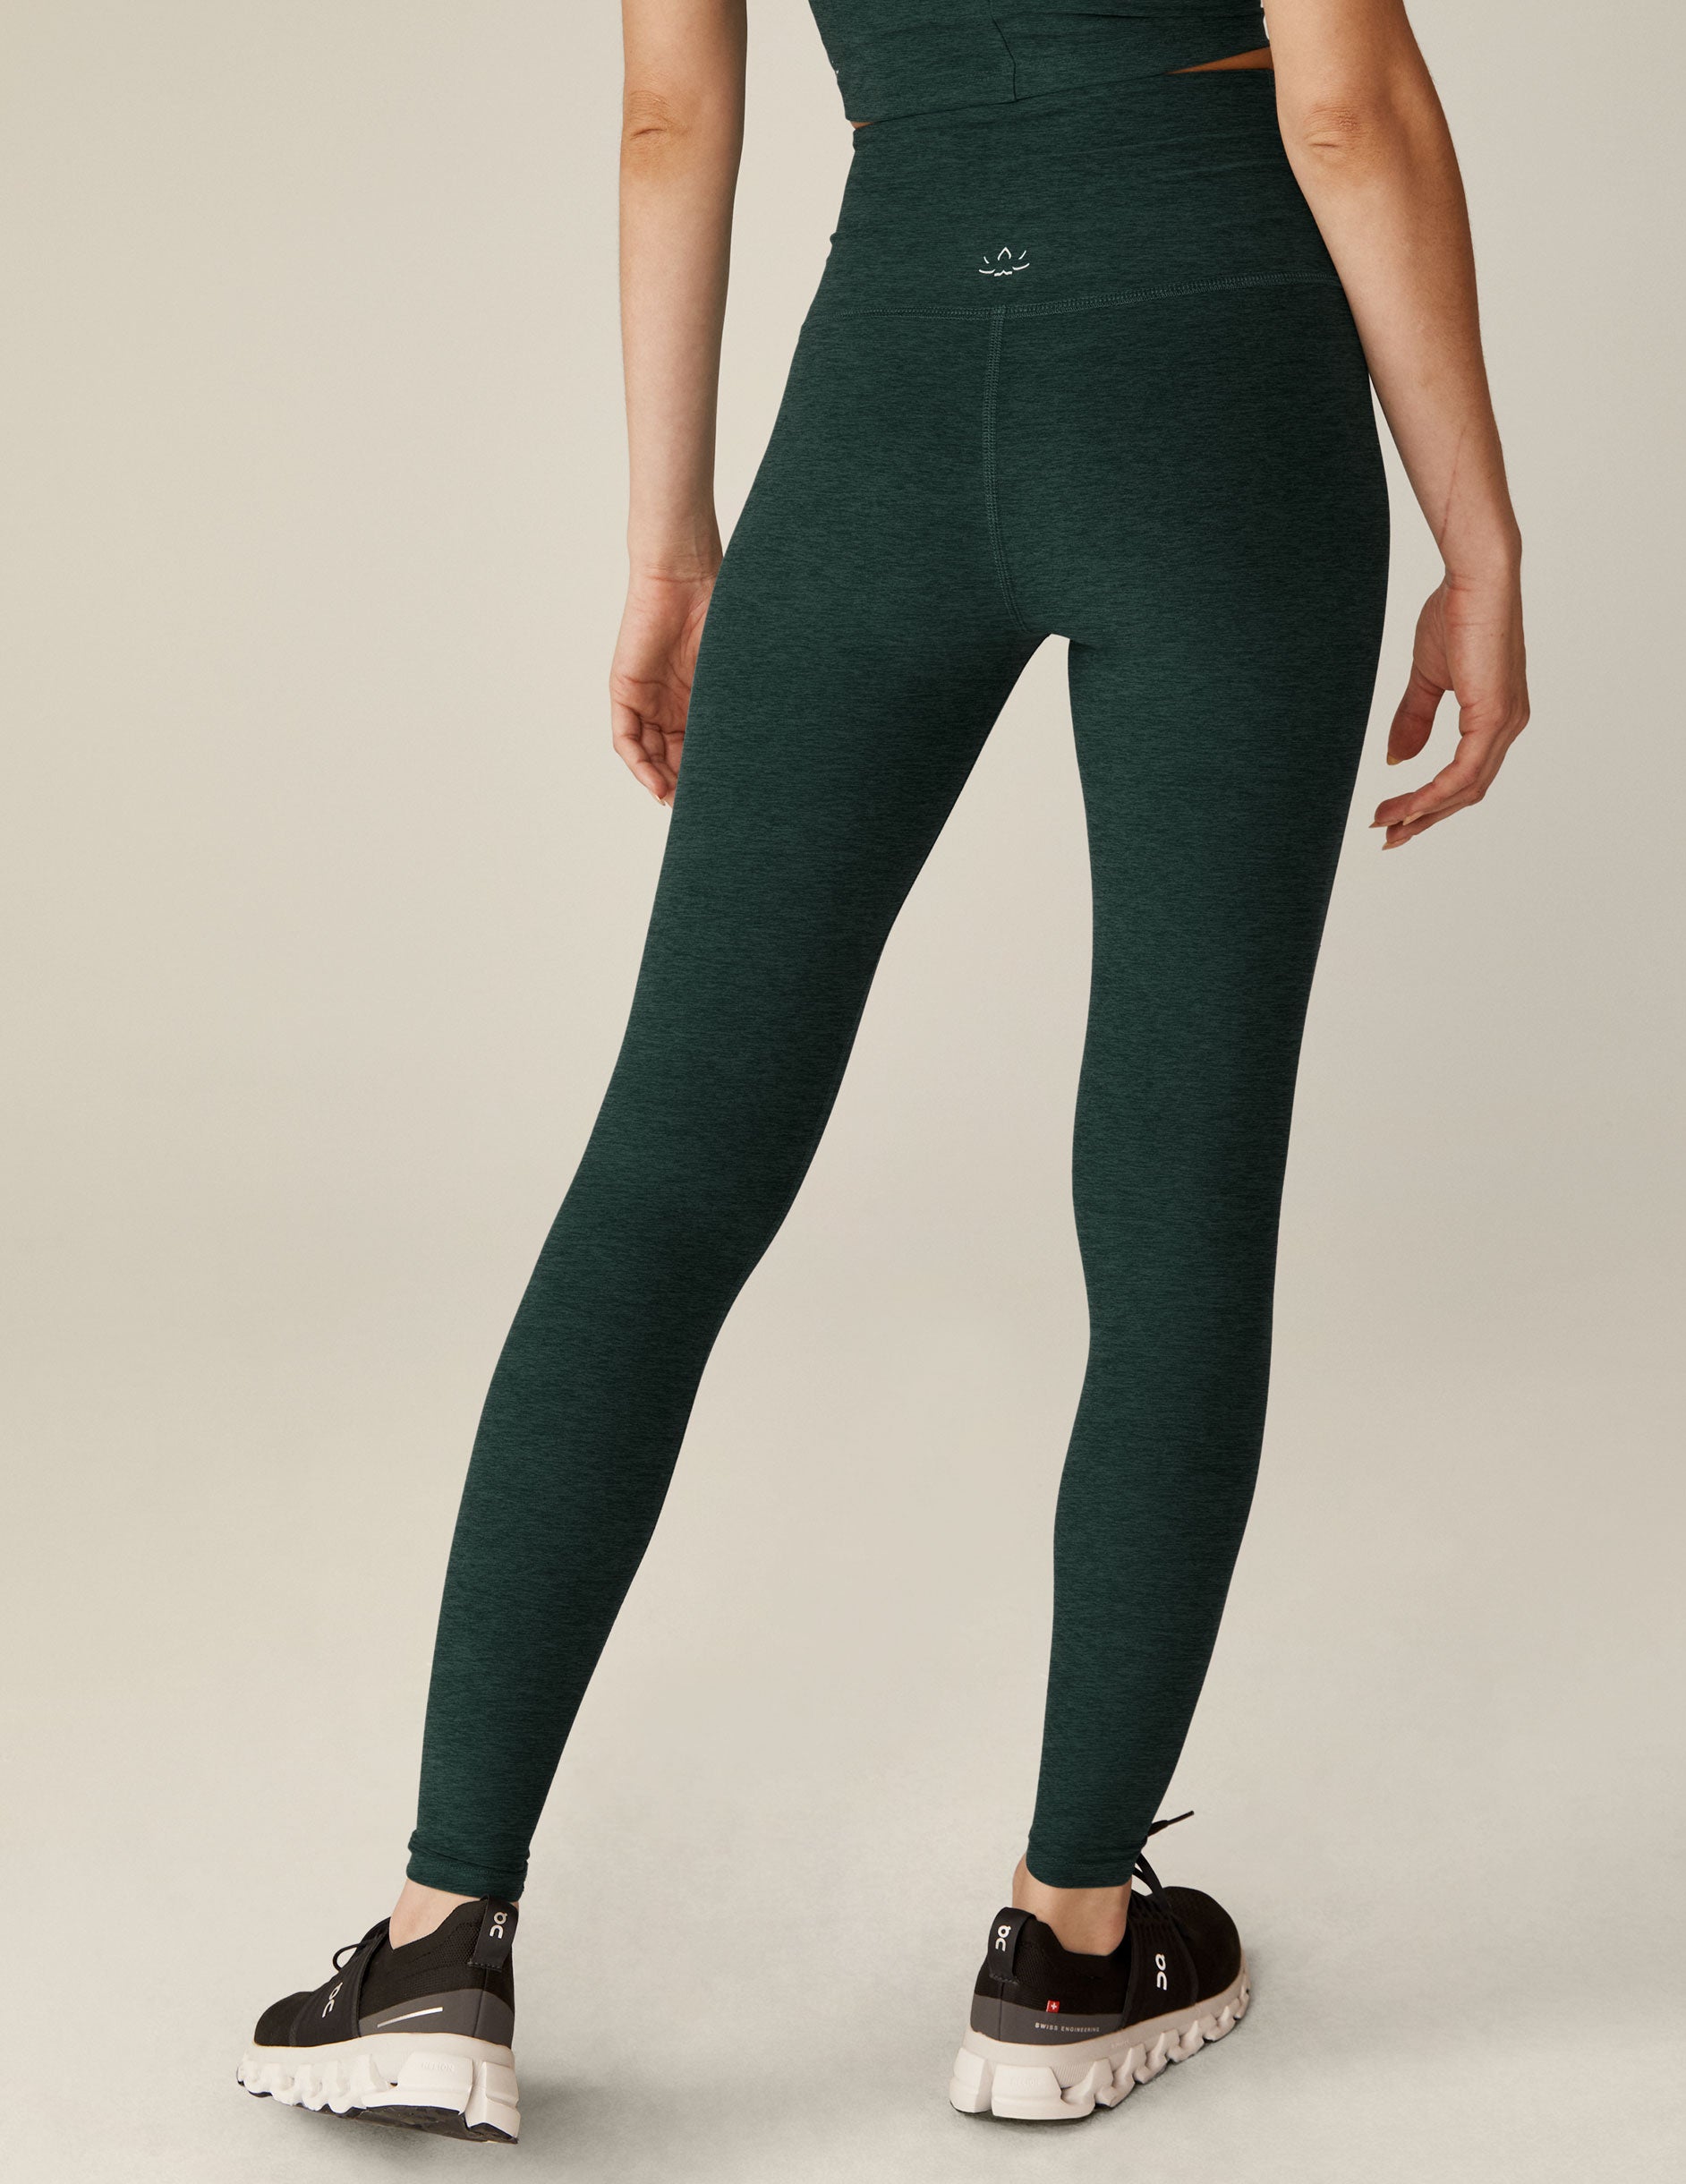 green high-waisted full length leggings. 